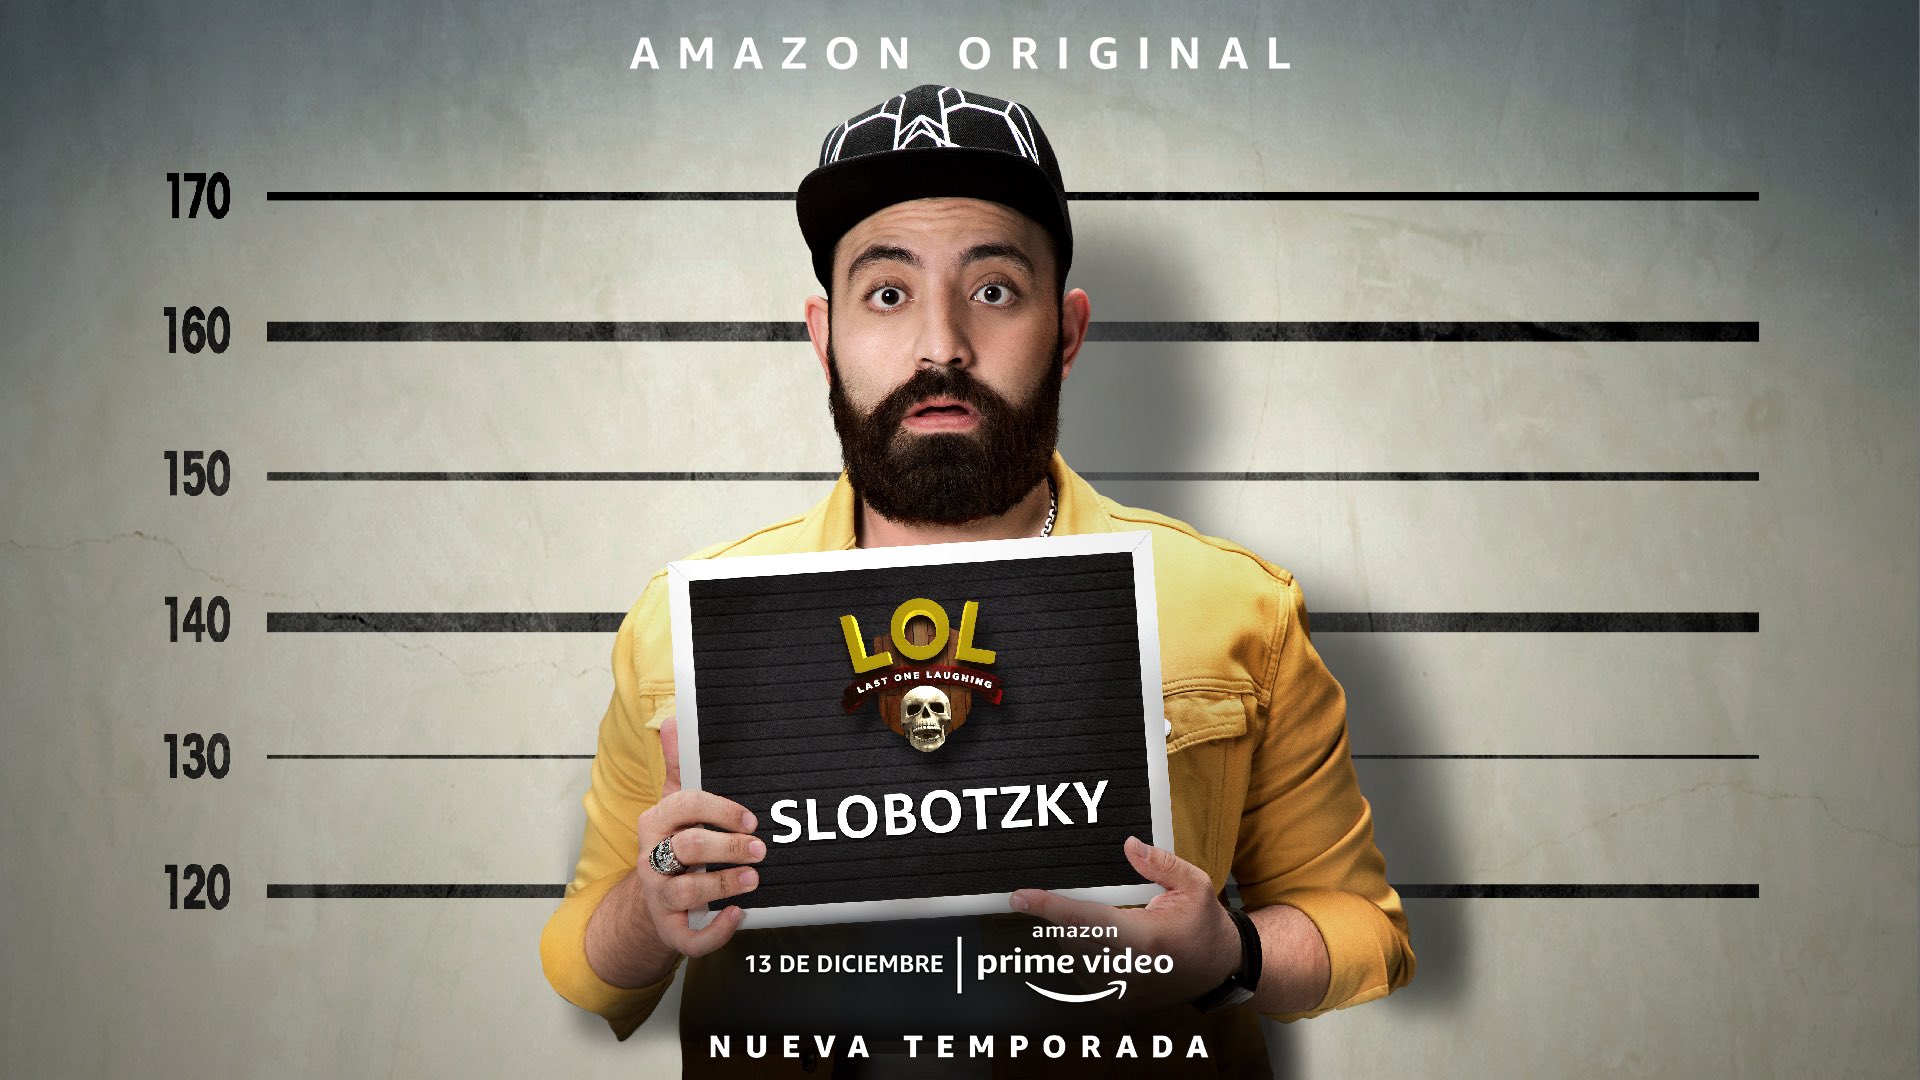 amazon prime video nueva temporada lol slobotzky